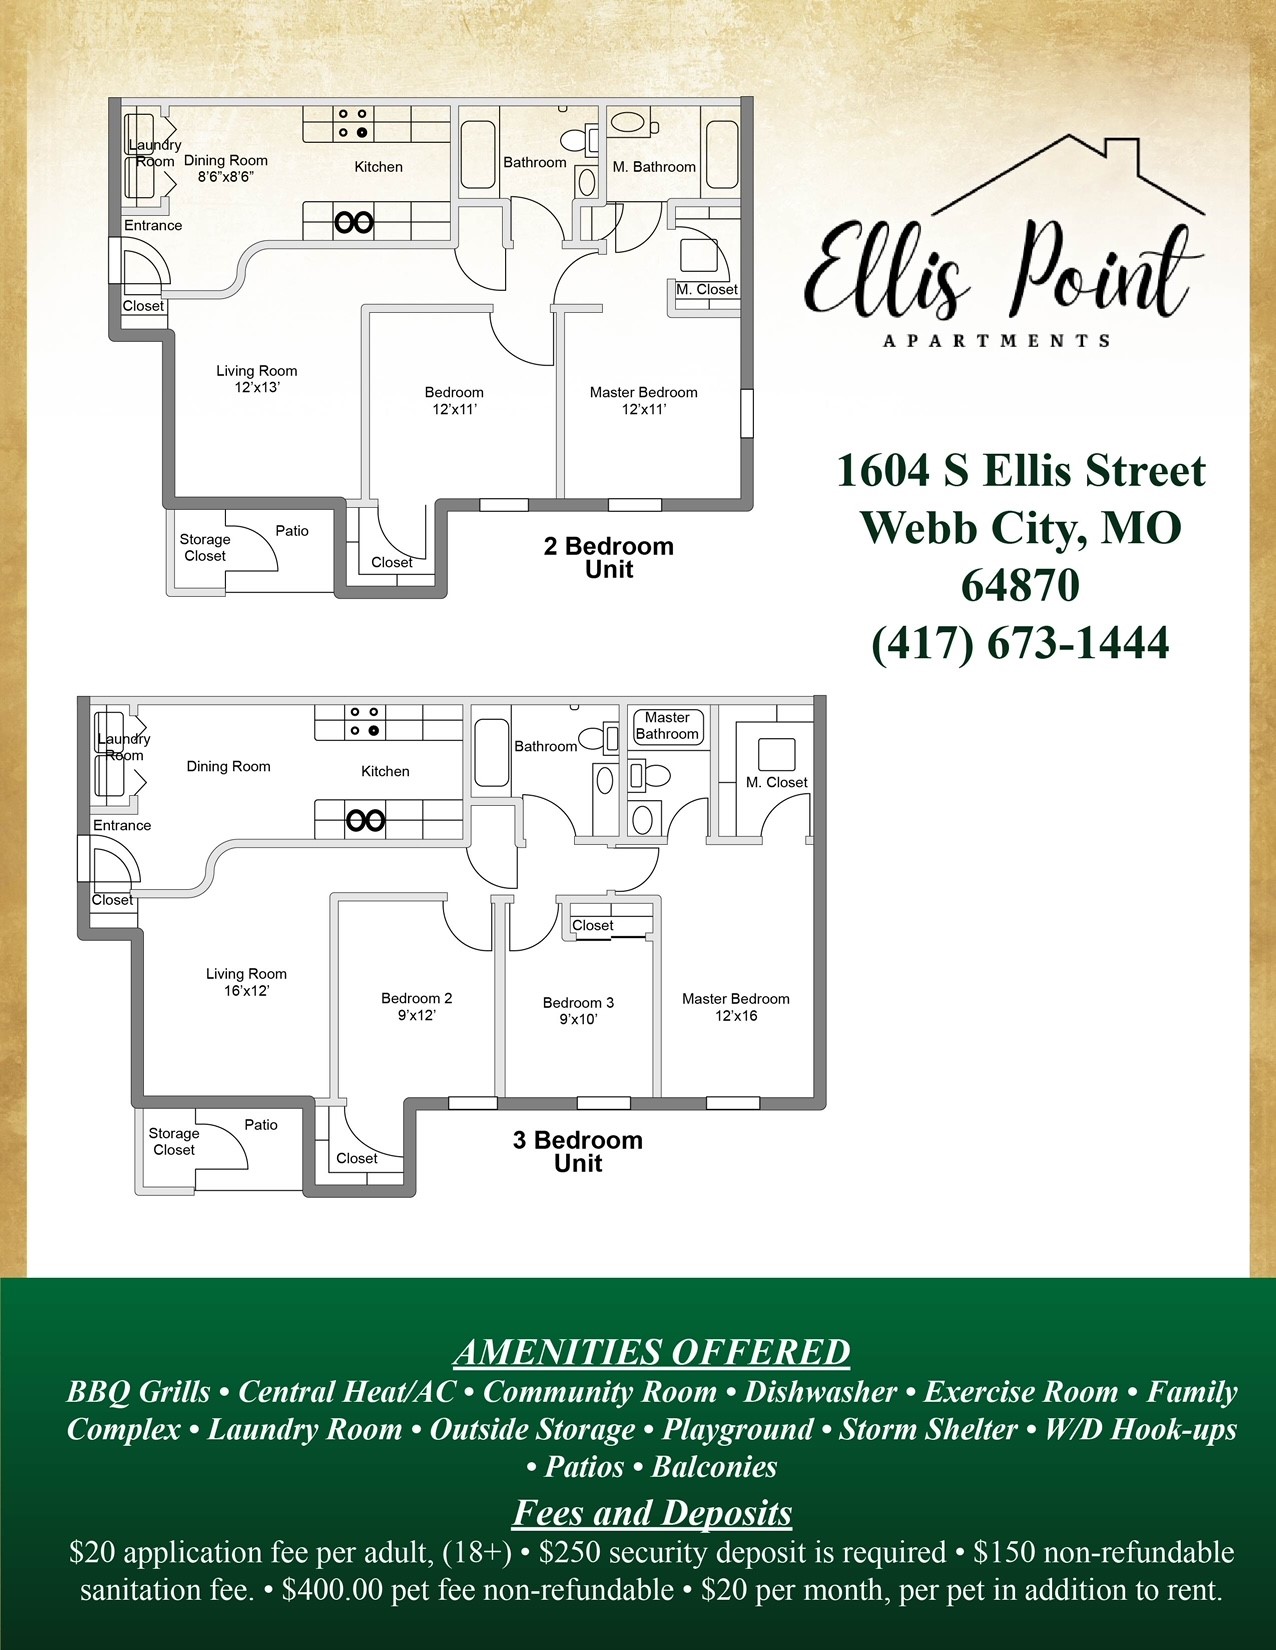 Ellis Point Apartments Bell Management